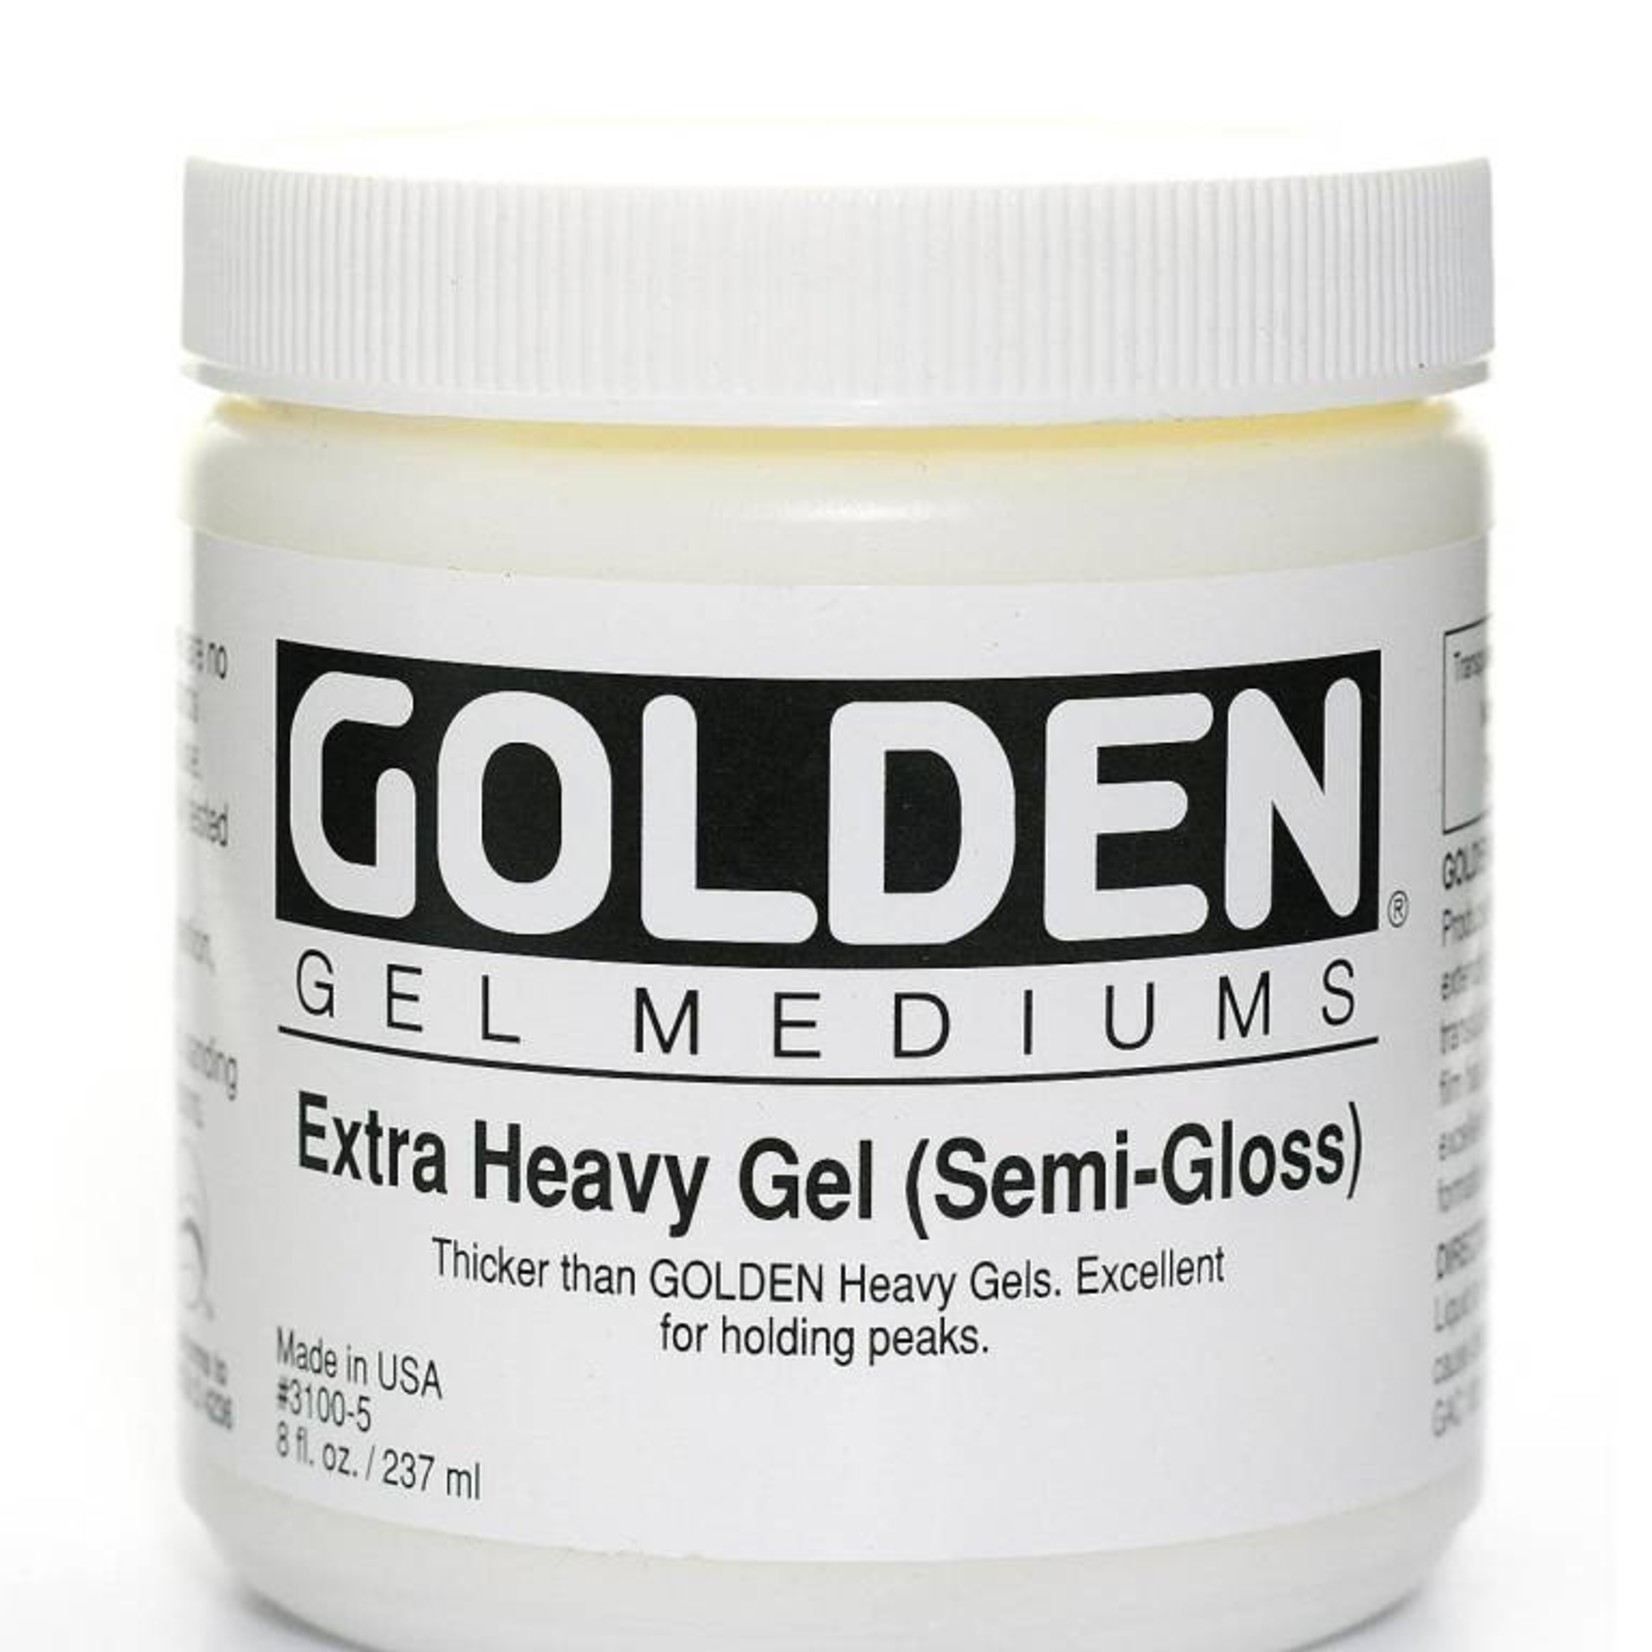 GOLDEN GOLDEN EXTRA HEAVY GEL